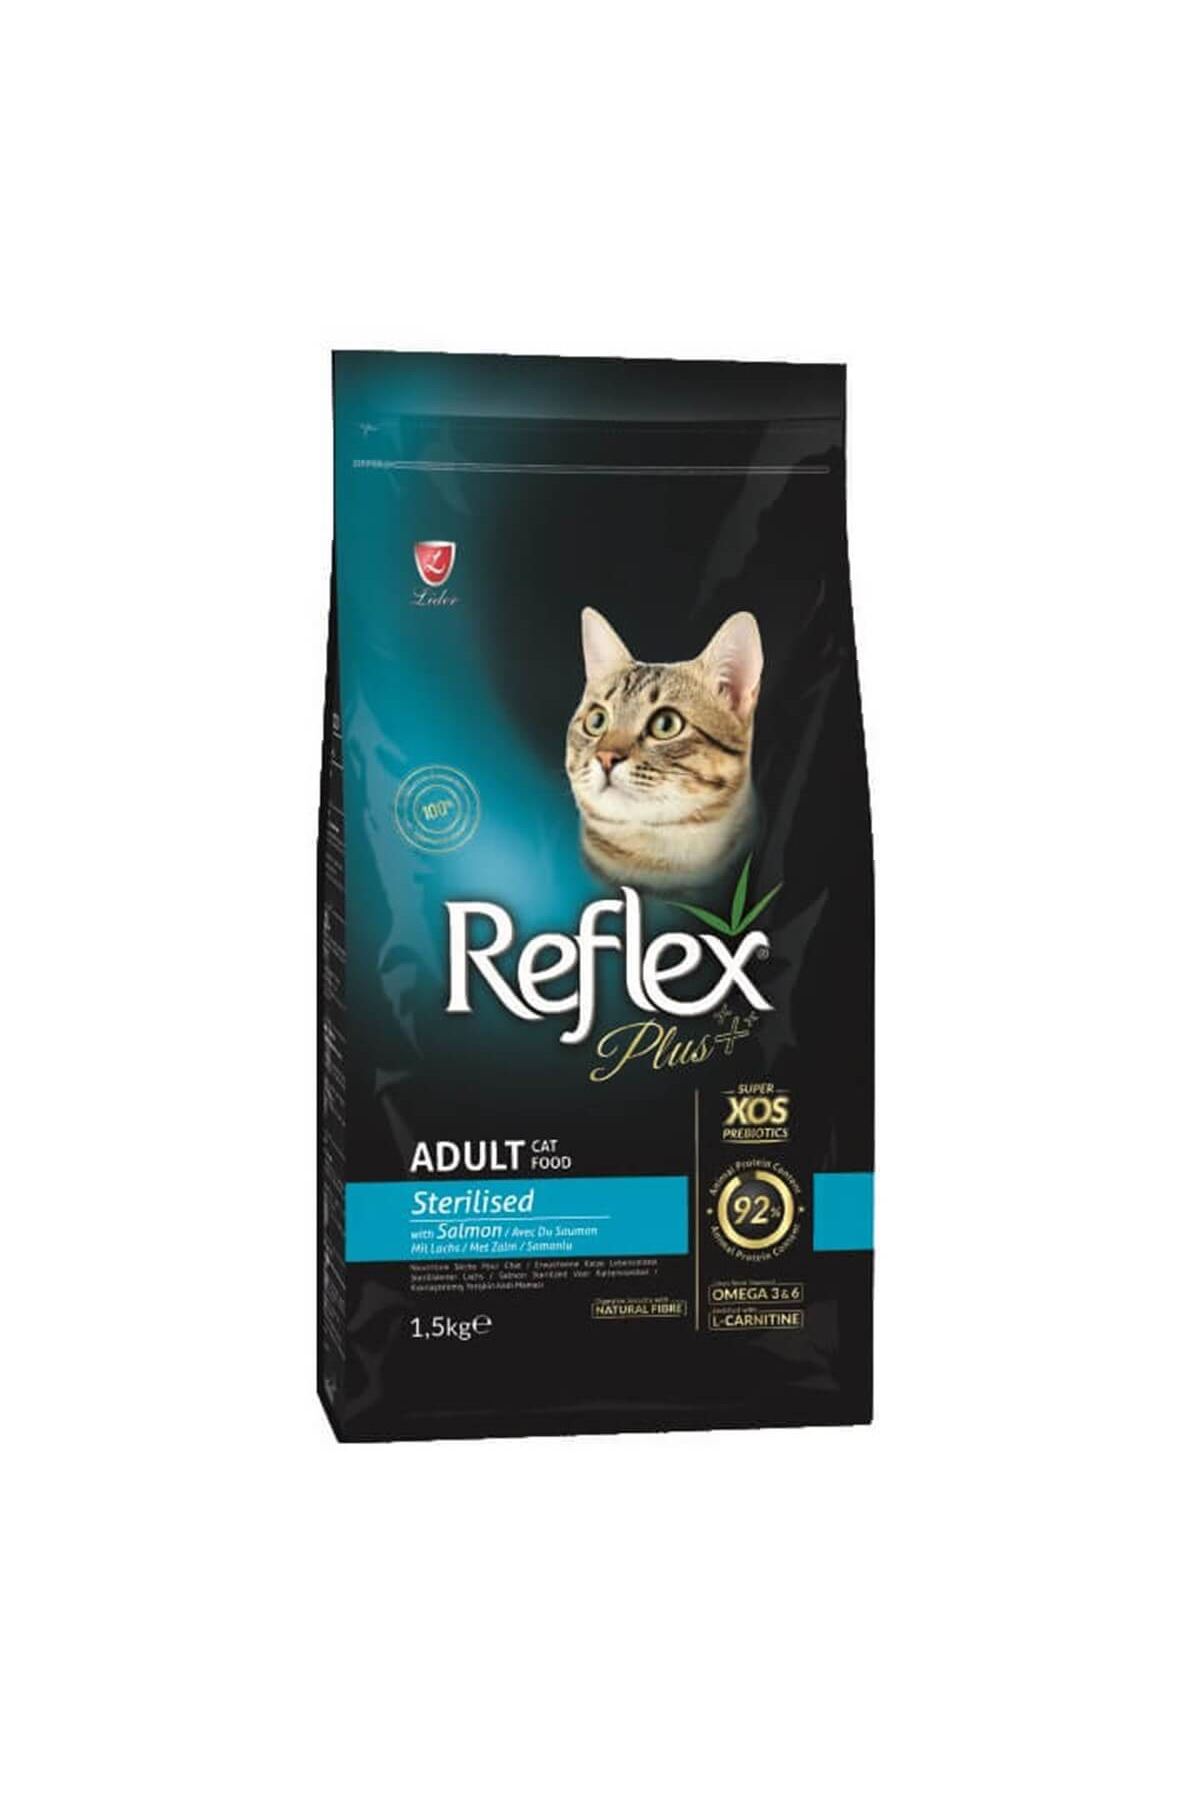 Reflex Plus Somonlu Kısırlaştırılmış Kedi Maması 8 kg